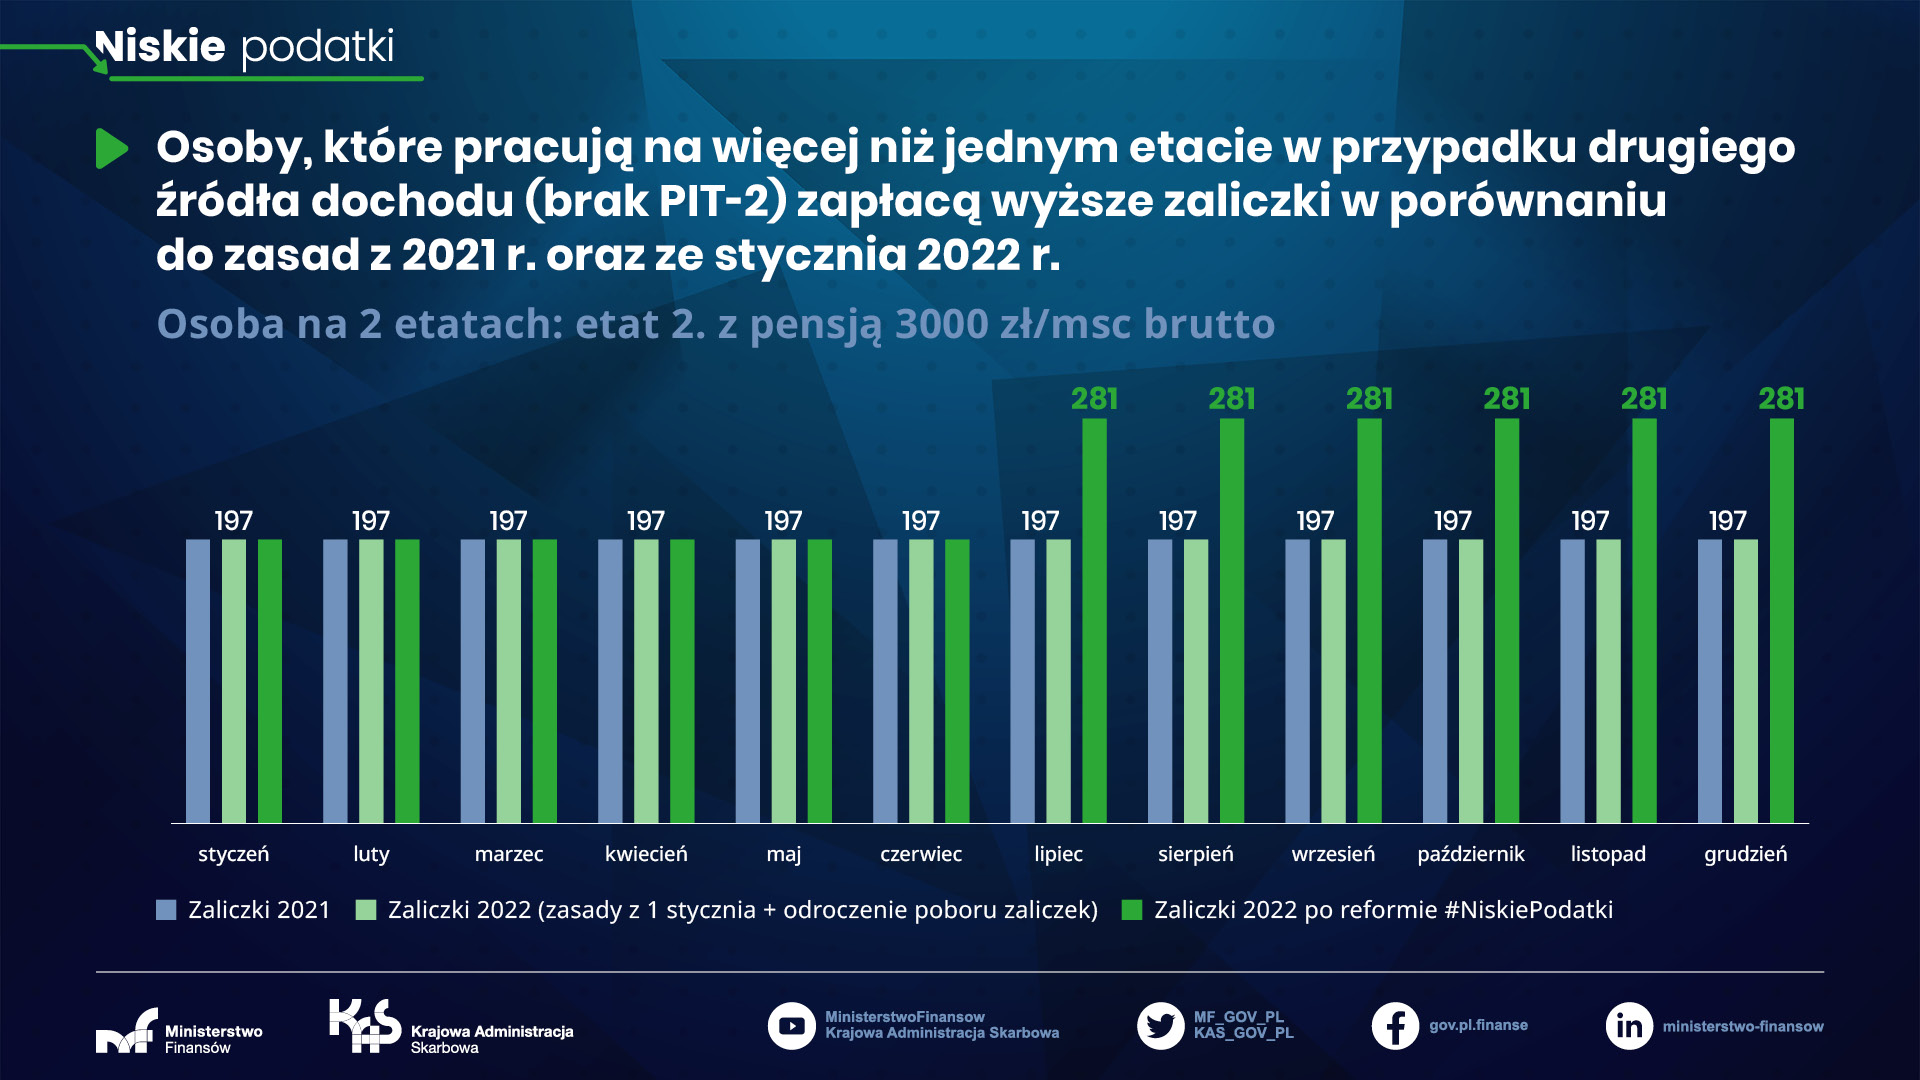 Niskie podatki - osoba na 2 etatach: etat 2. z pensją 3000 zł/msc brutto